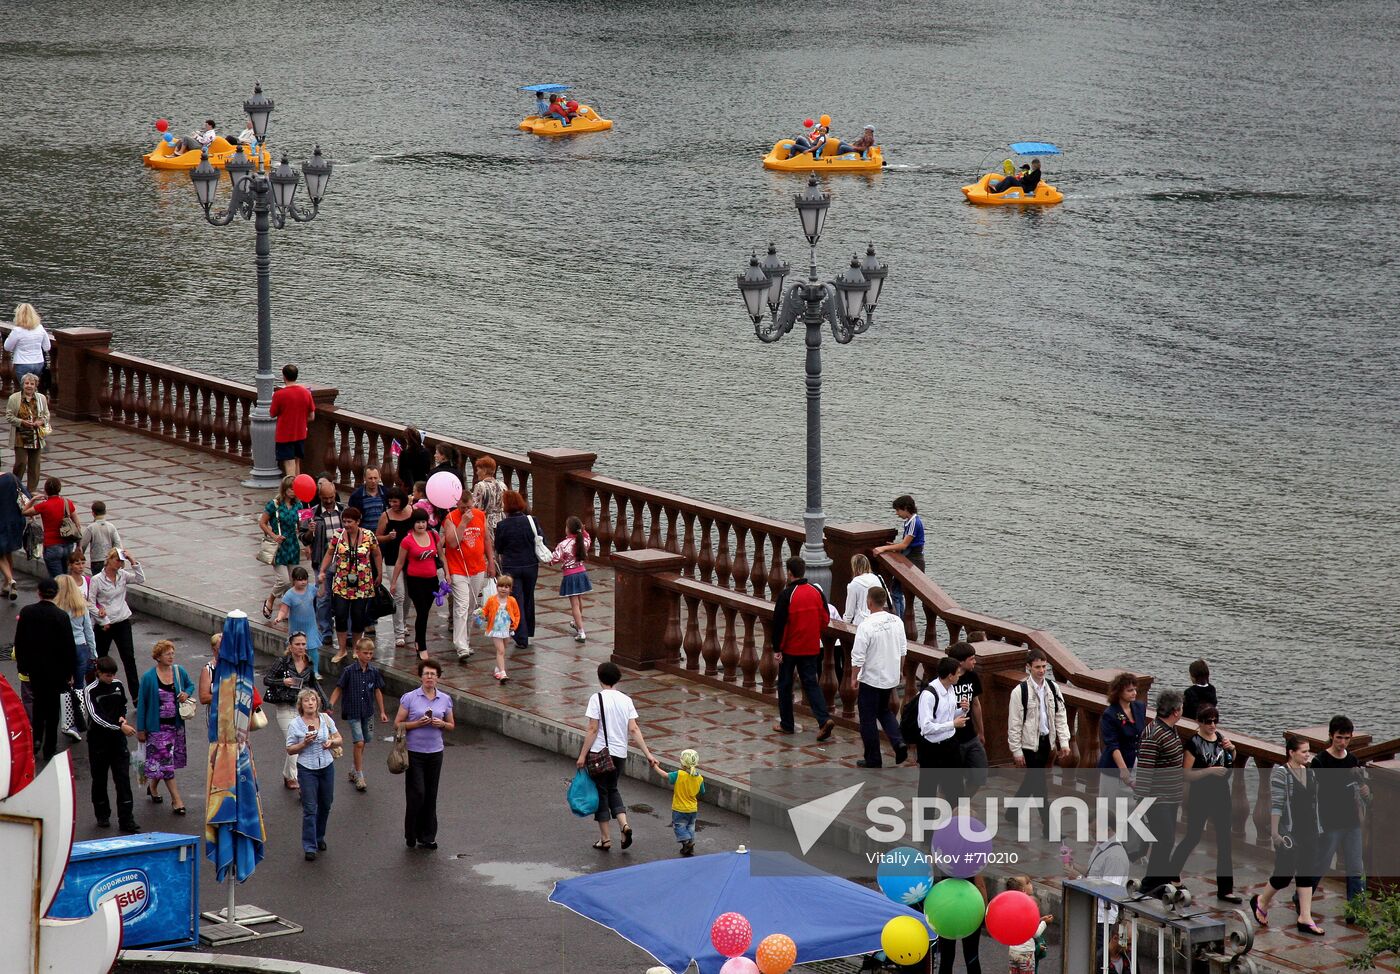 Vladivostok marks 150th birthday